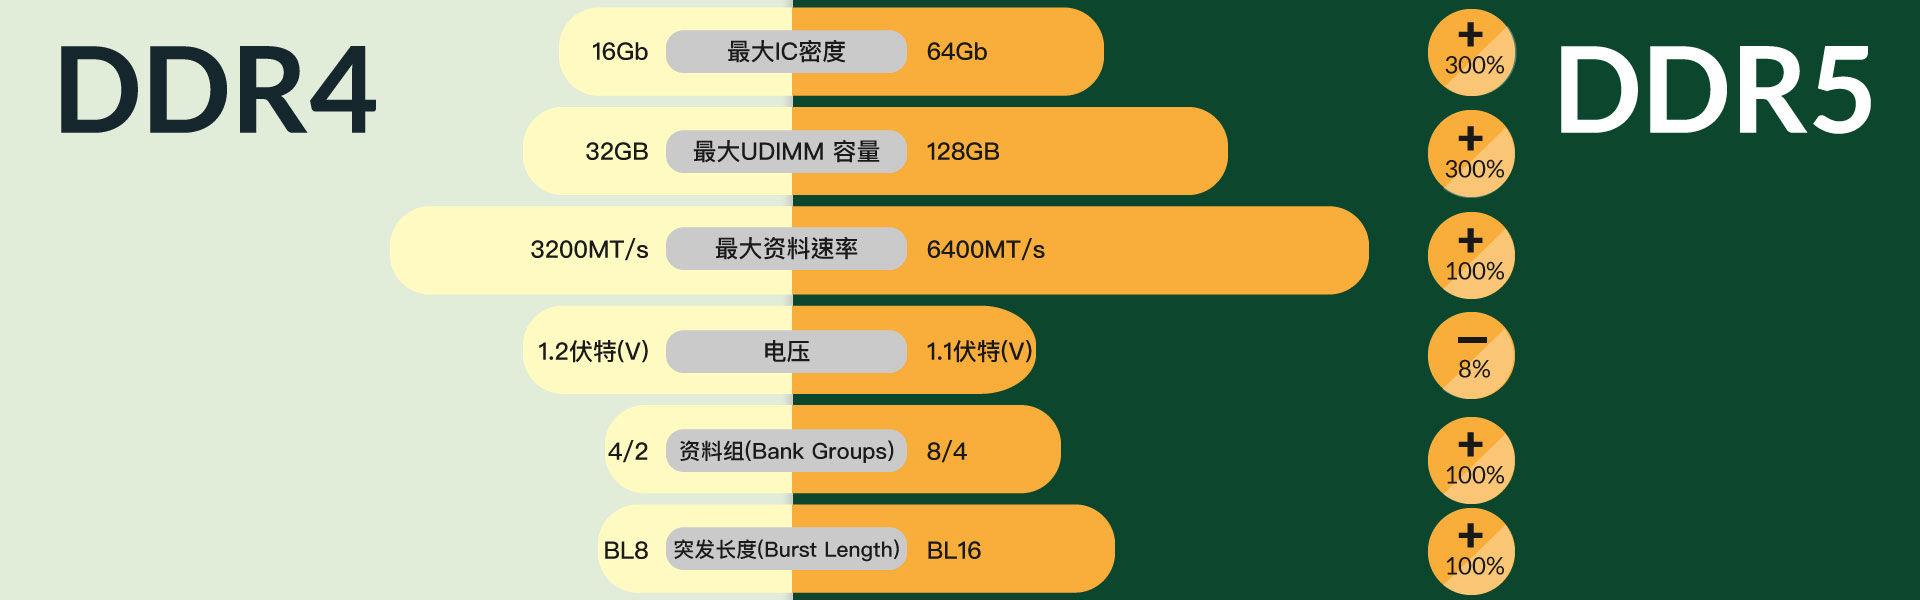 DDR4与DDR5 比较